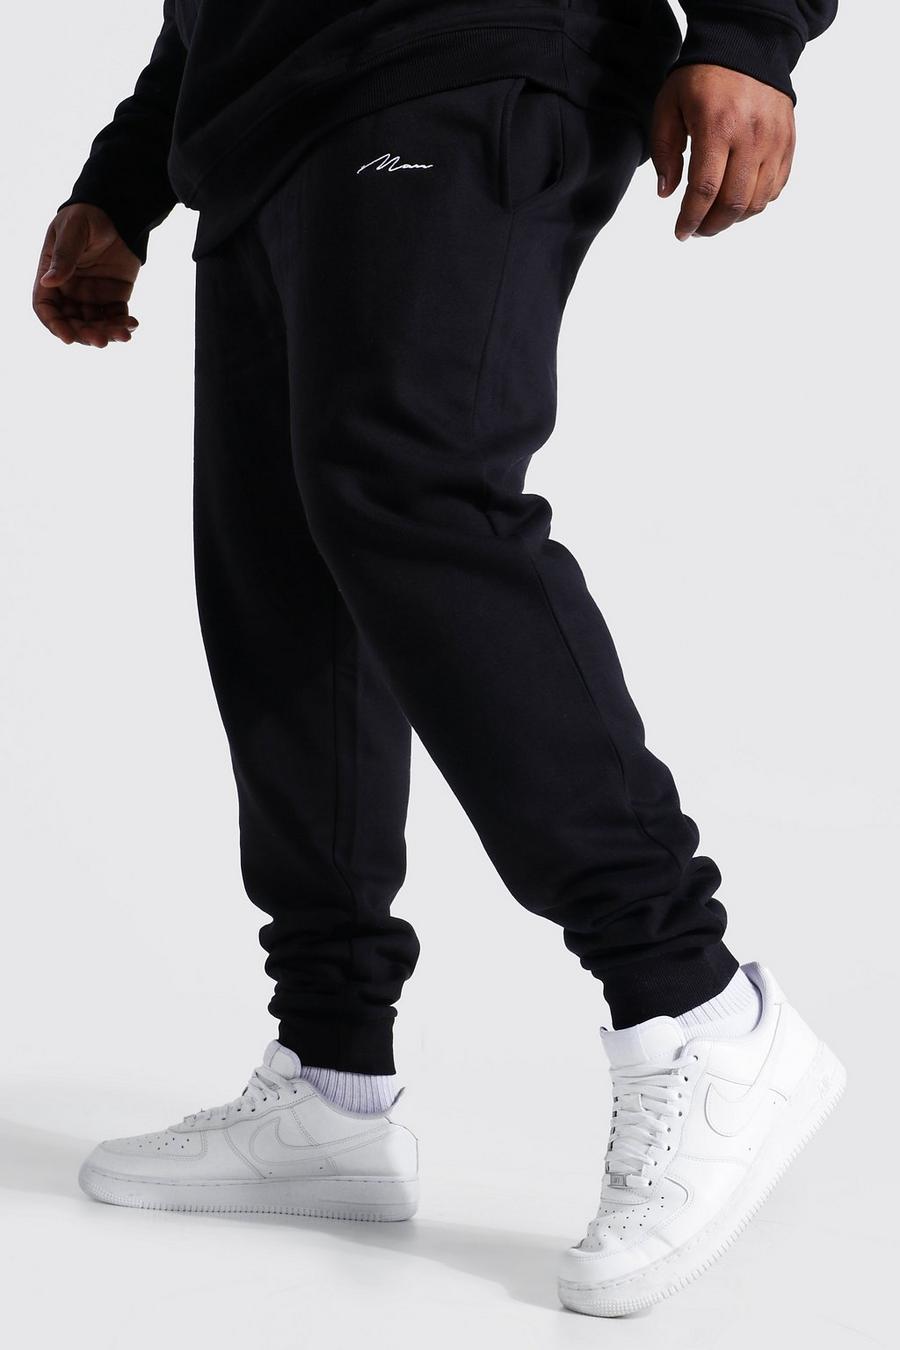 Pantaloni tuta Plus Size in fibre riciclate con scritta Man Skinny Fit, Black nero